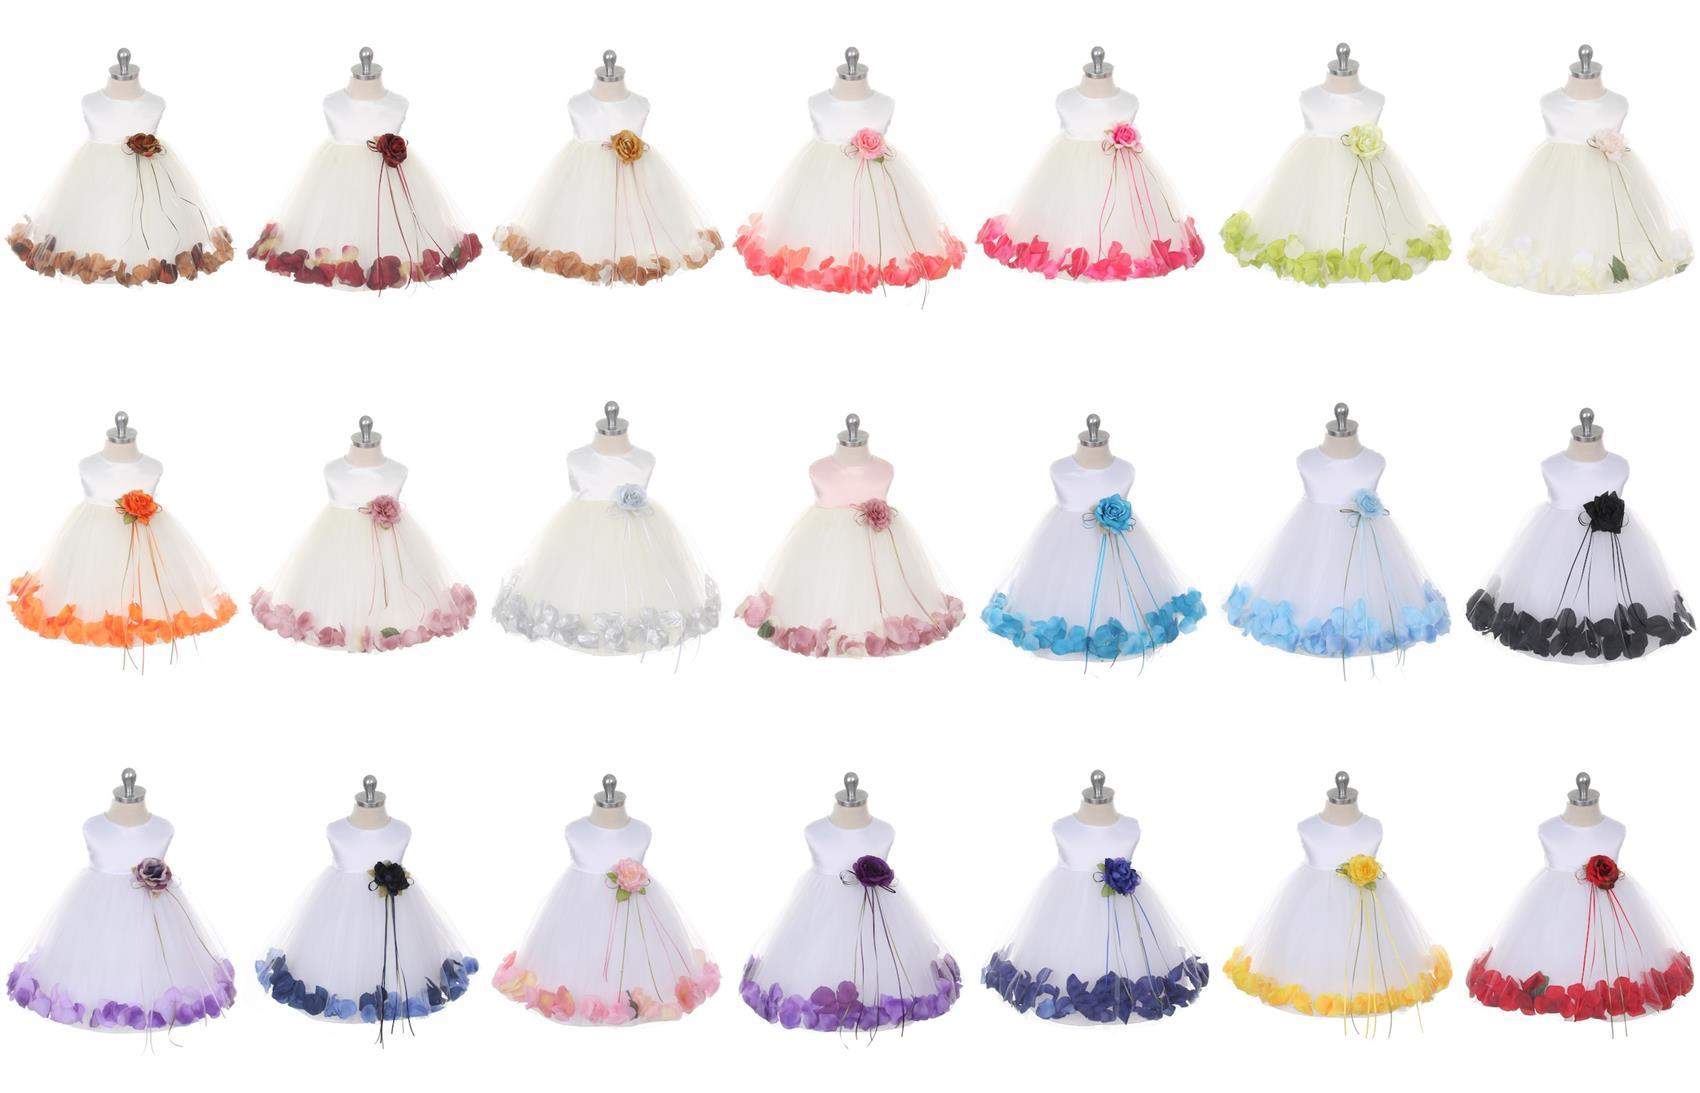 Sequin Top Petal Dress Baby-Kid's Dream-Baby,Baby Clothes,Baby dress,baby Party Dress,Flower Girl,Toddler,Toddler Clothes,Toddler Dress,Toddlers